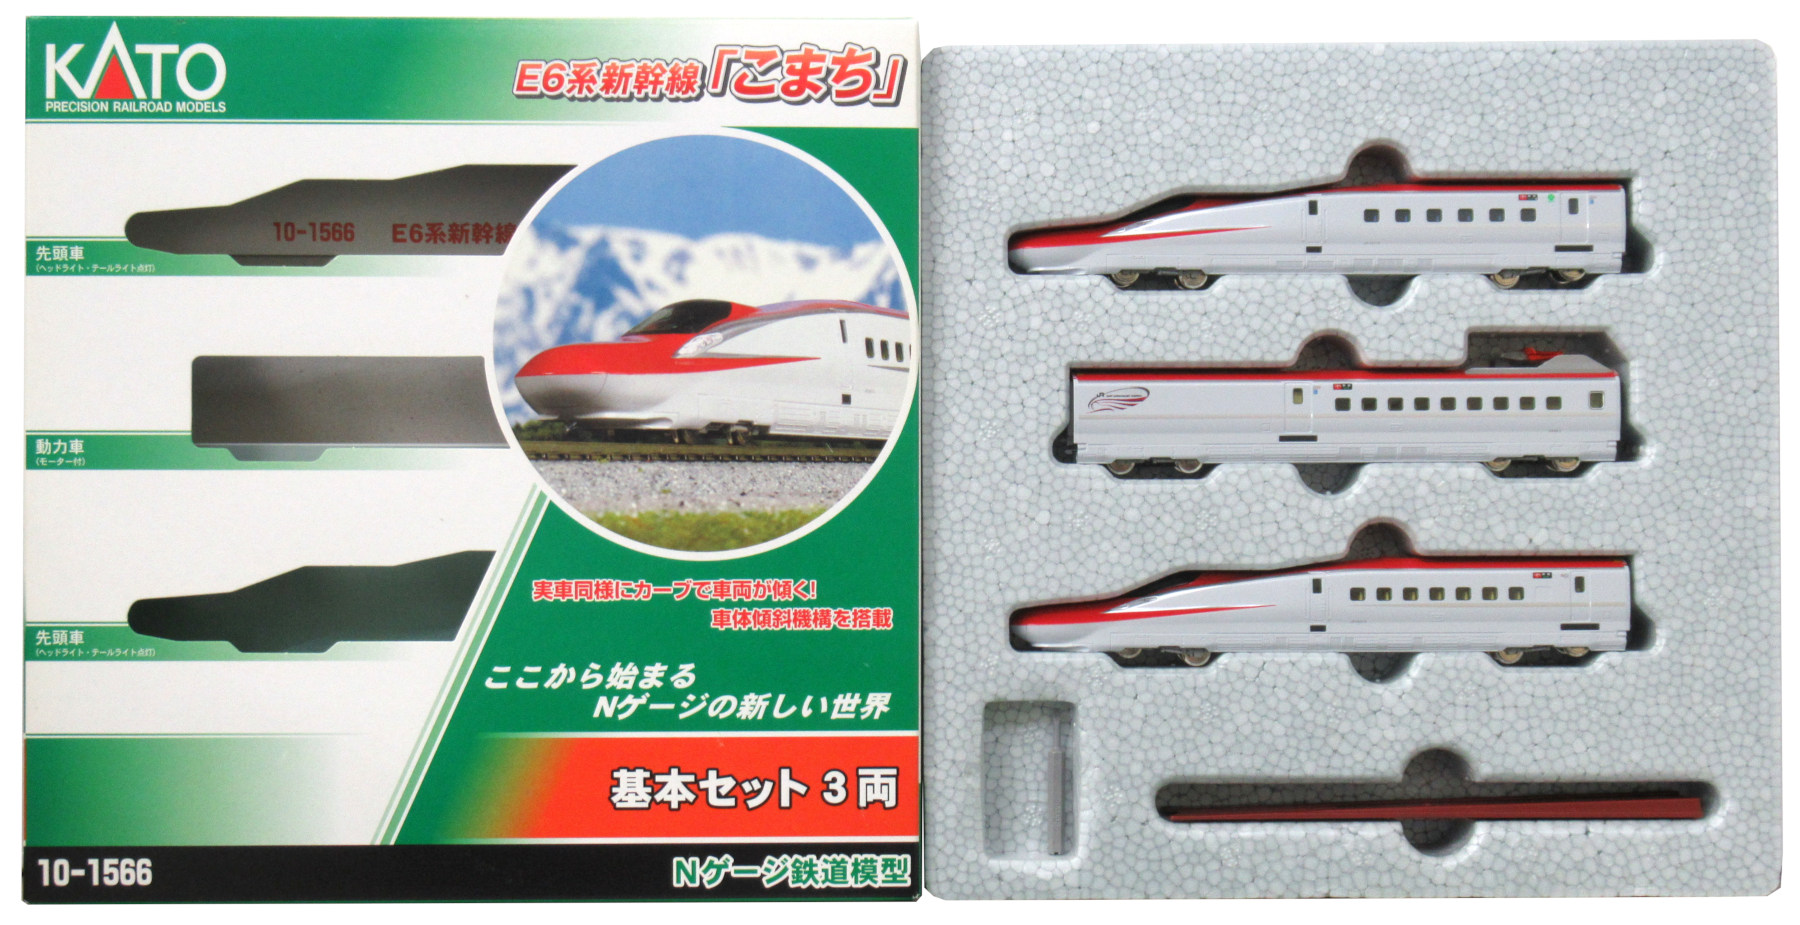 KATO 10-1566 E6系新幹線「こまち」 基本セット(3両)おもちゃ/ぬいぐるみ